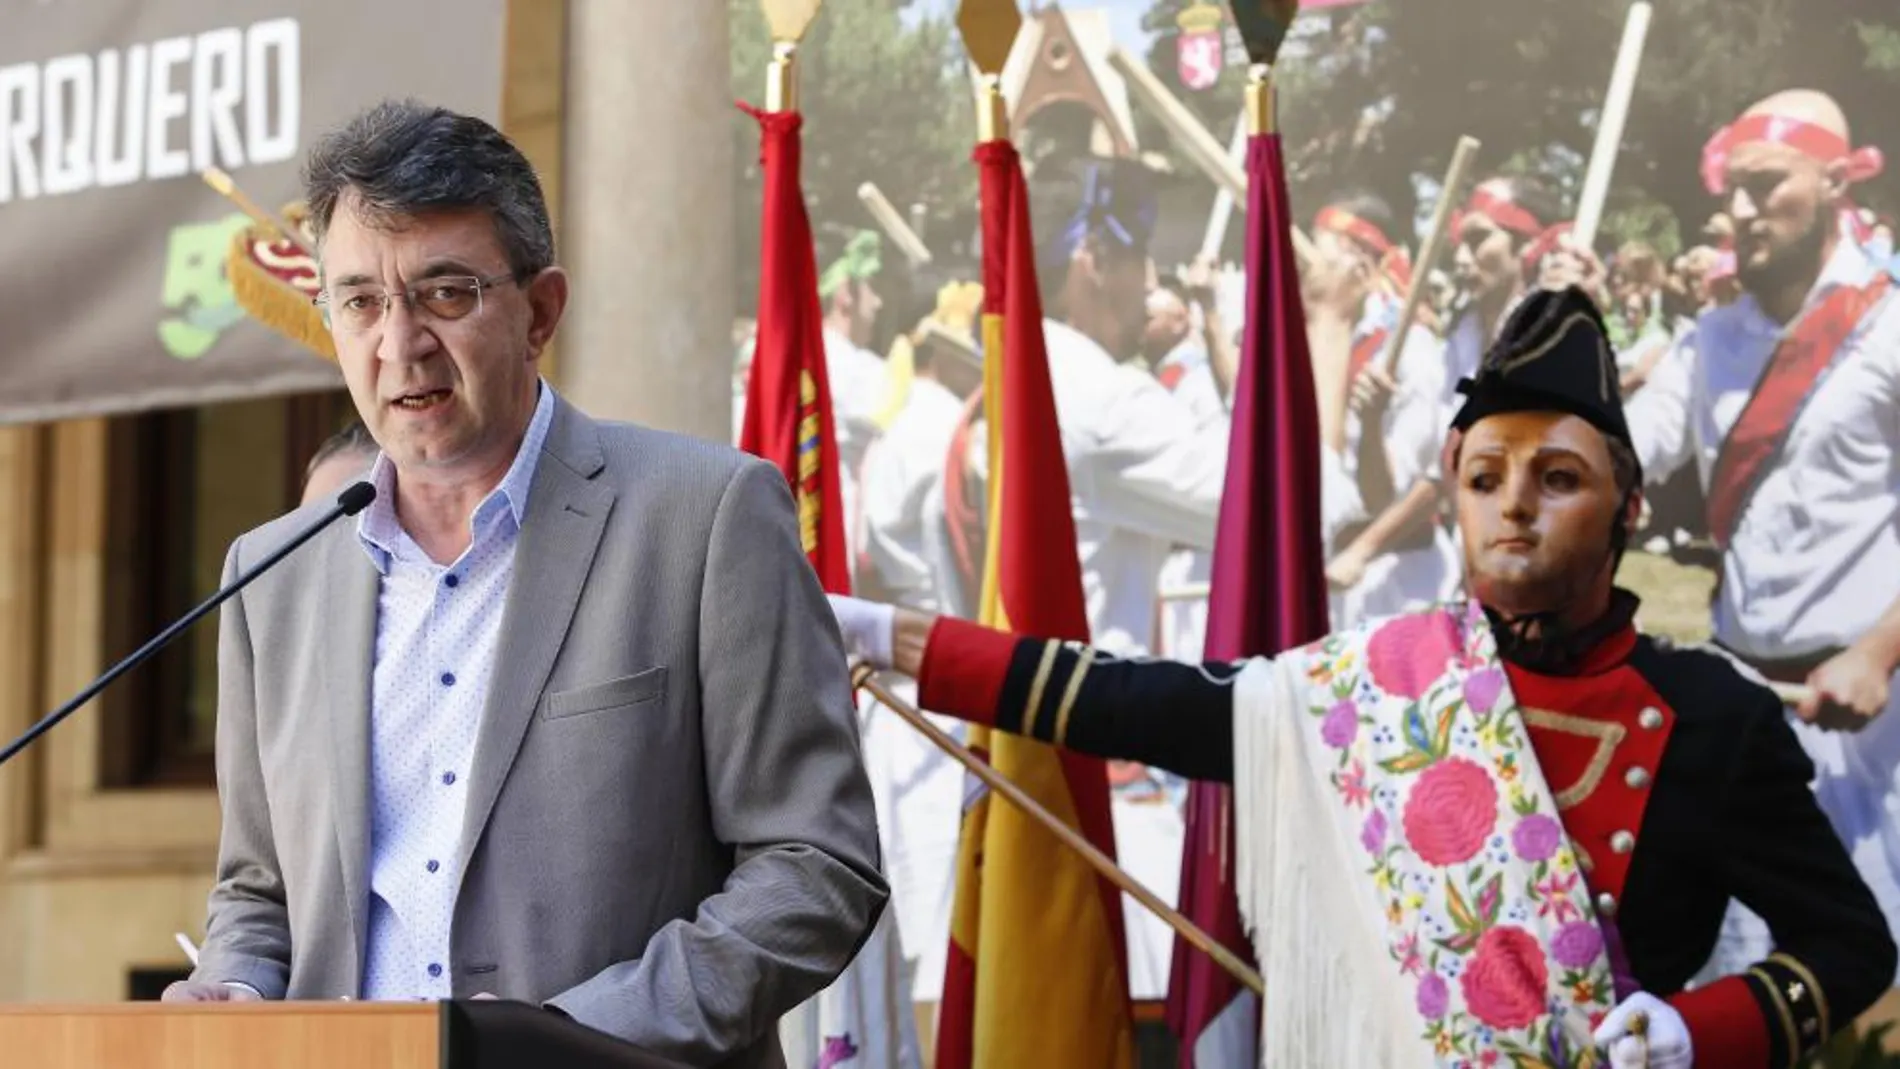 El presidente de la Diputación de León, Juan Martínez Majo, durante la rueda de prensa donde dio a conocer la solicitud a la Unesco